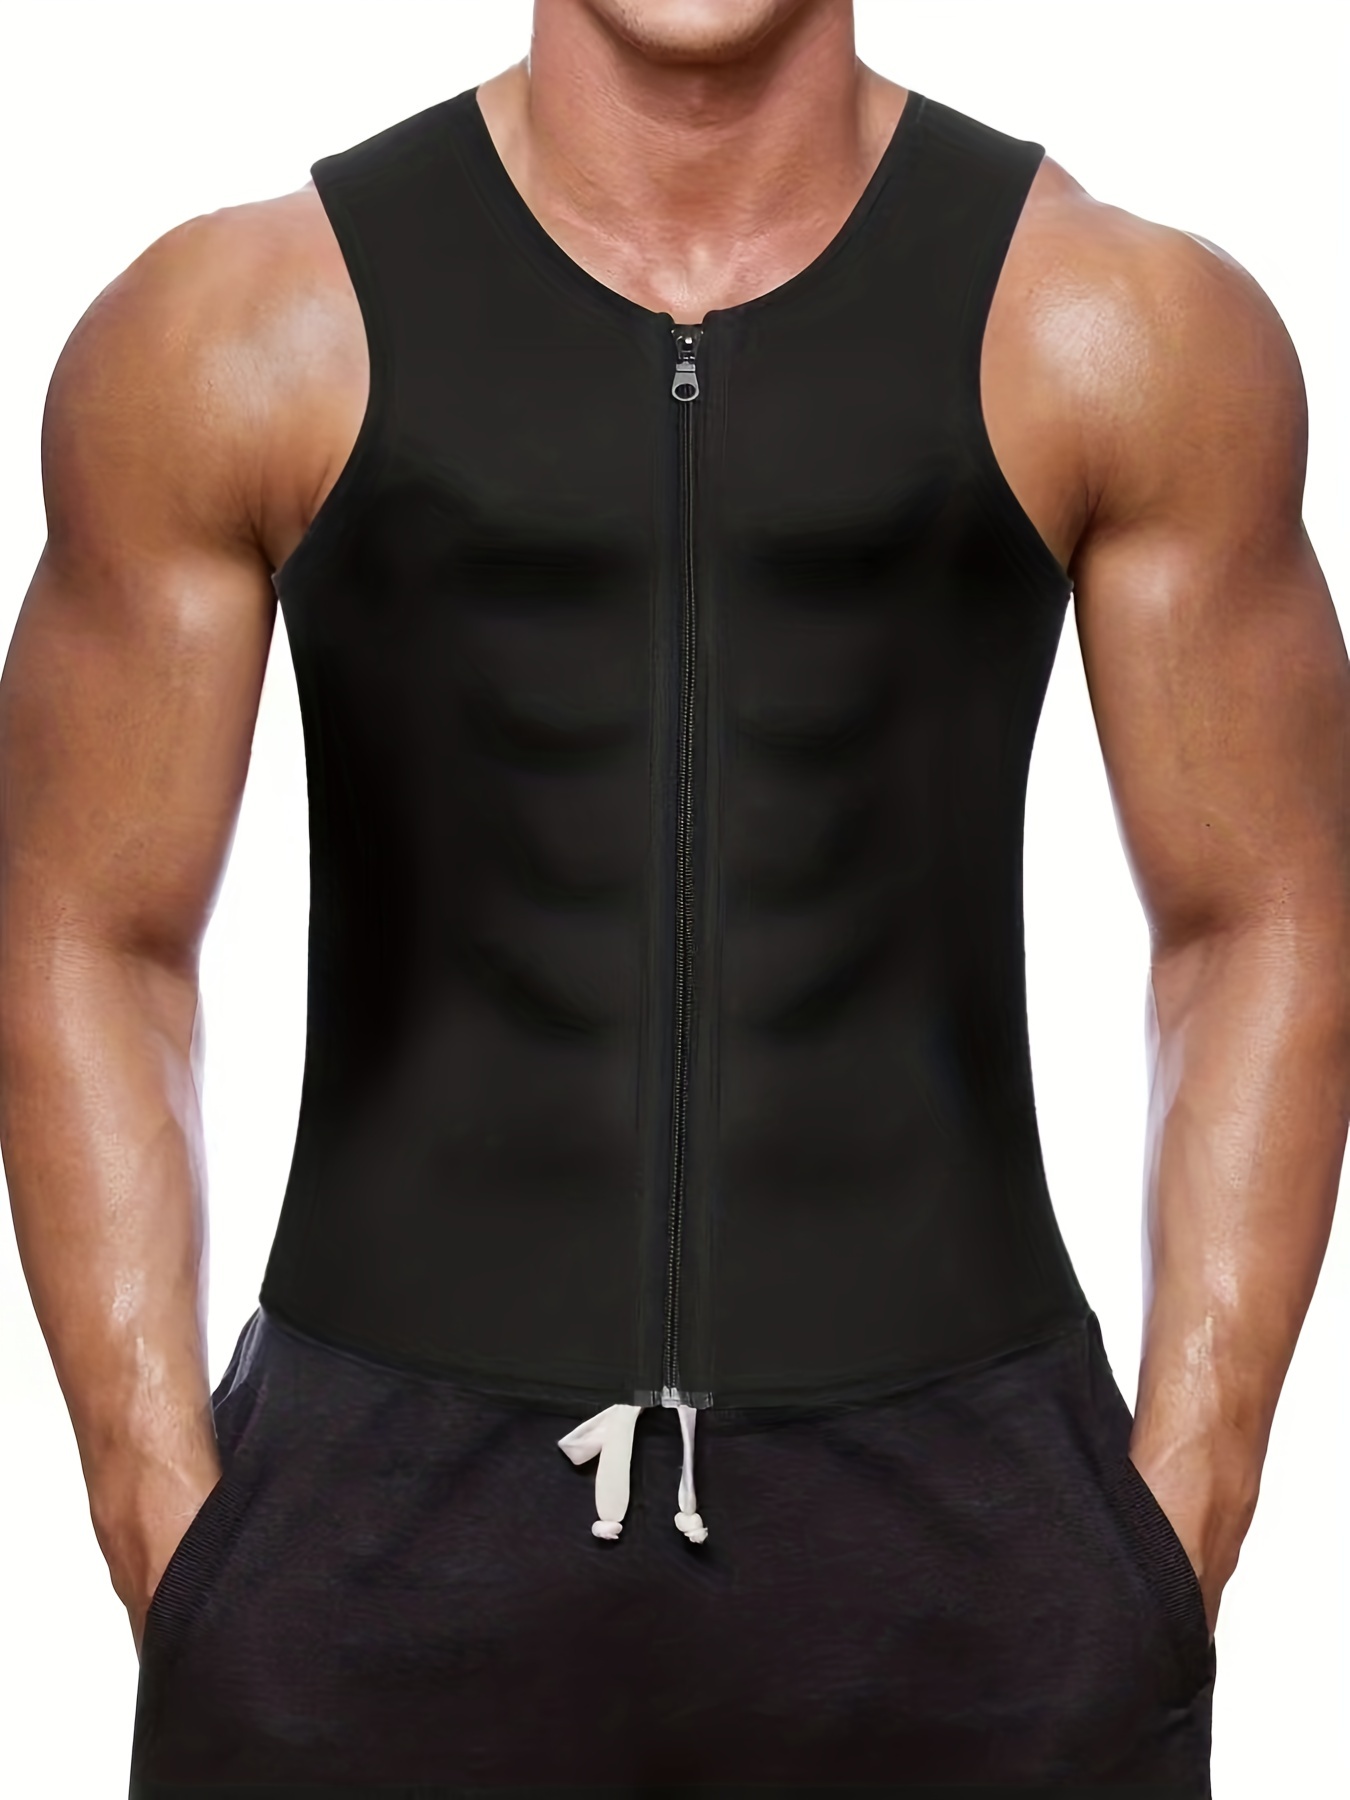 Neoprene Shirt Corset Sauna Suit Jacket Tops Body Shaper L